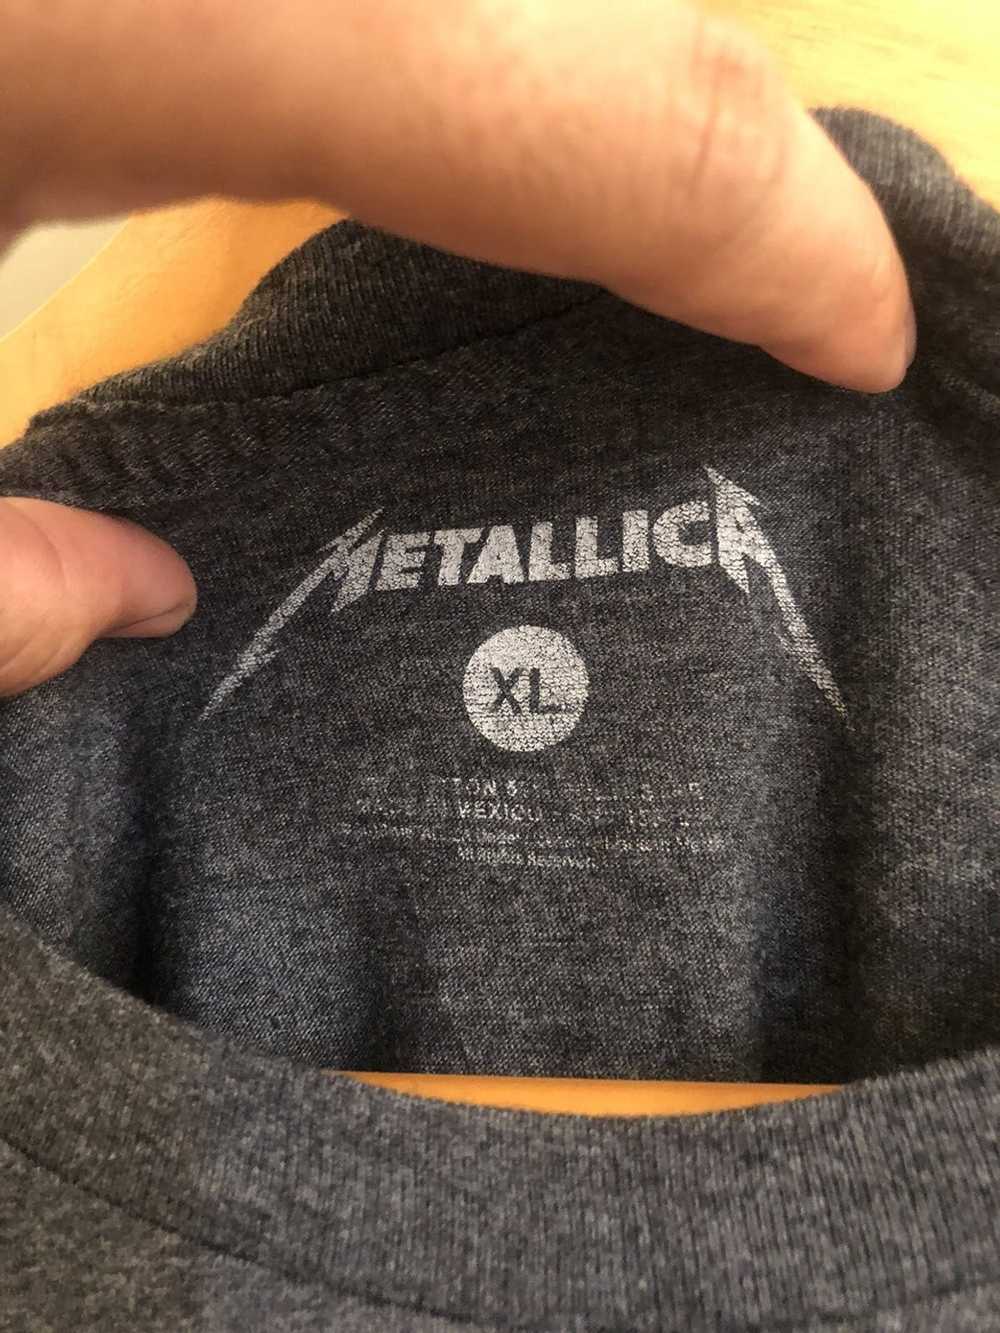 Band Tees × Metallica × Tee Shirt Metallica Band … - image 4